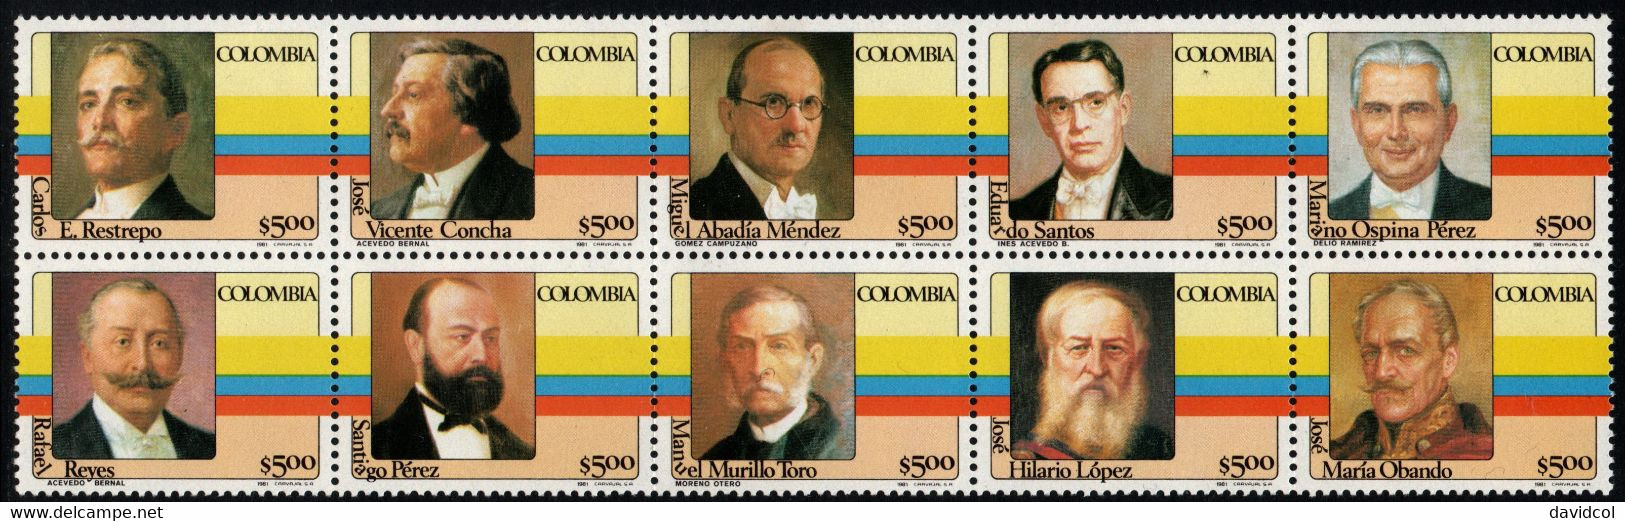 06- KOLUMBIEN - 1981- MI#:1475-1484- MNH- COLOMBIAN PRESIDENTS 1ST ISSUE - Colombia